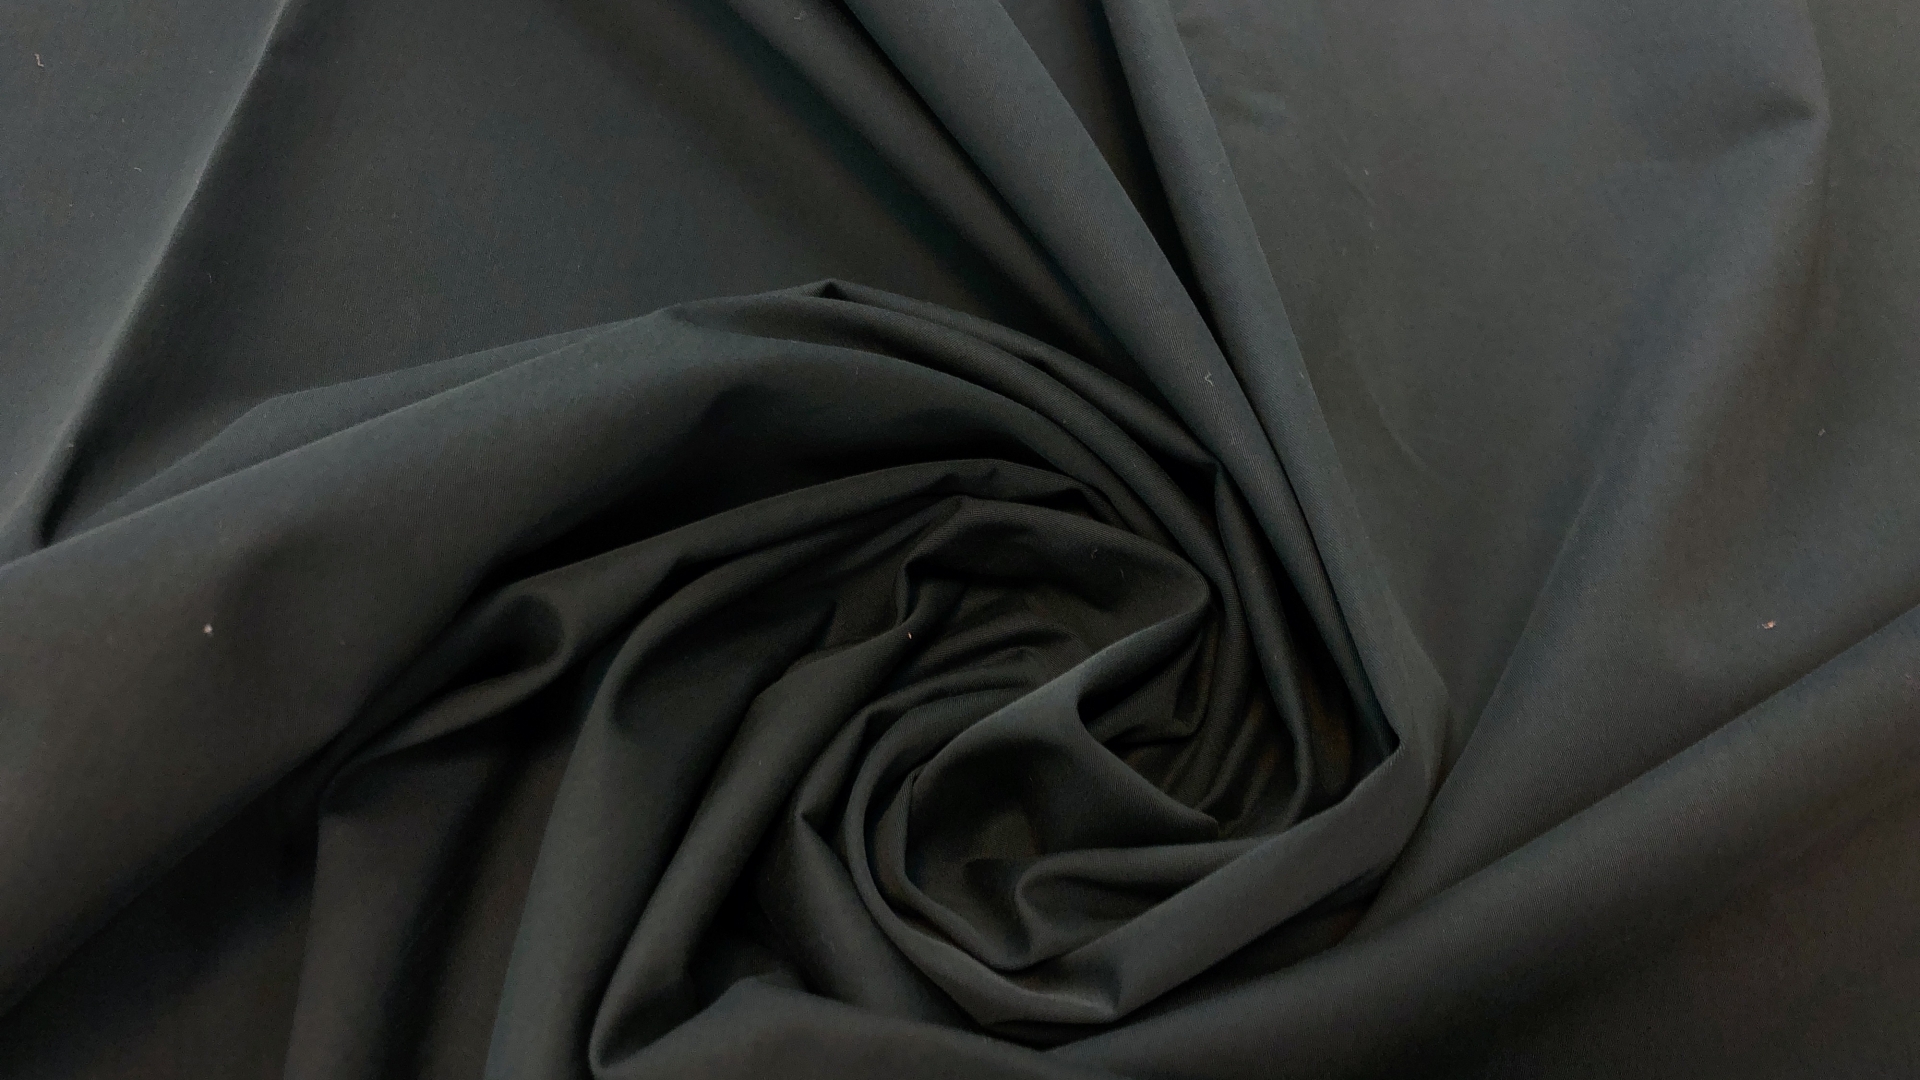 Сток итальянской фабрики! Хлопковая плащевка черного цвета. По плотности подходит для пошива и летней легкой куртки, и спортивных брючек.